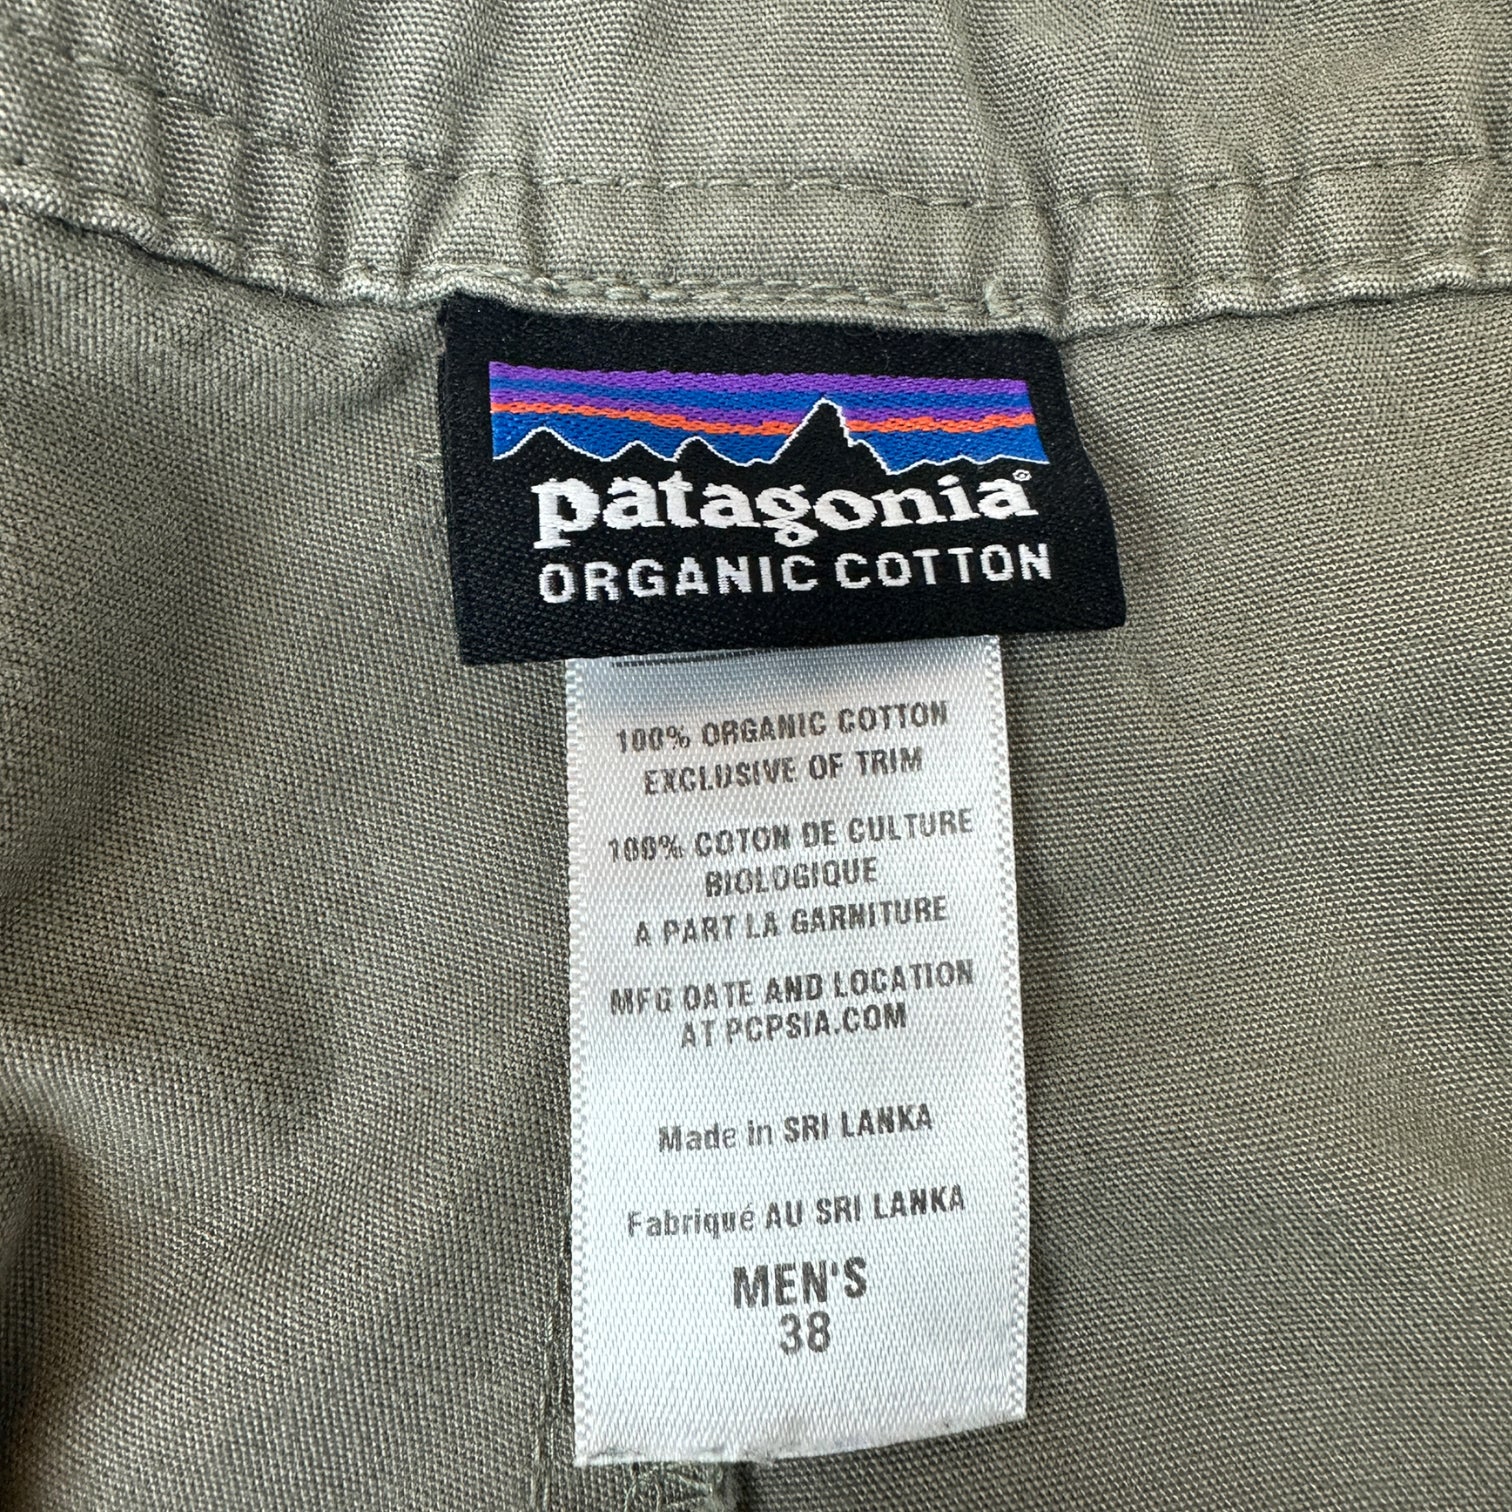 Vintage Patagonia Cargo Shorts Green/Grey